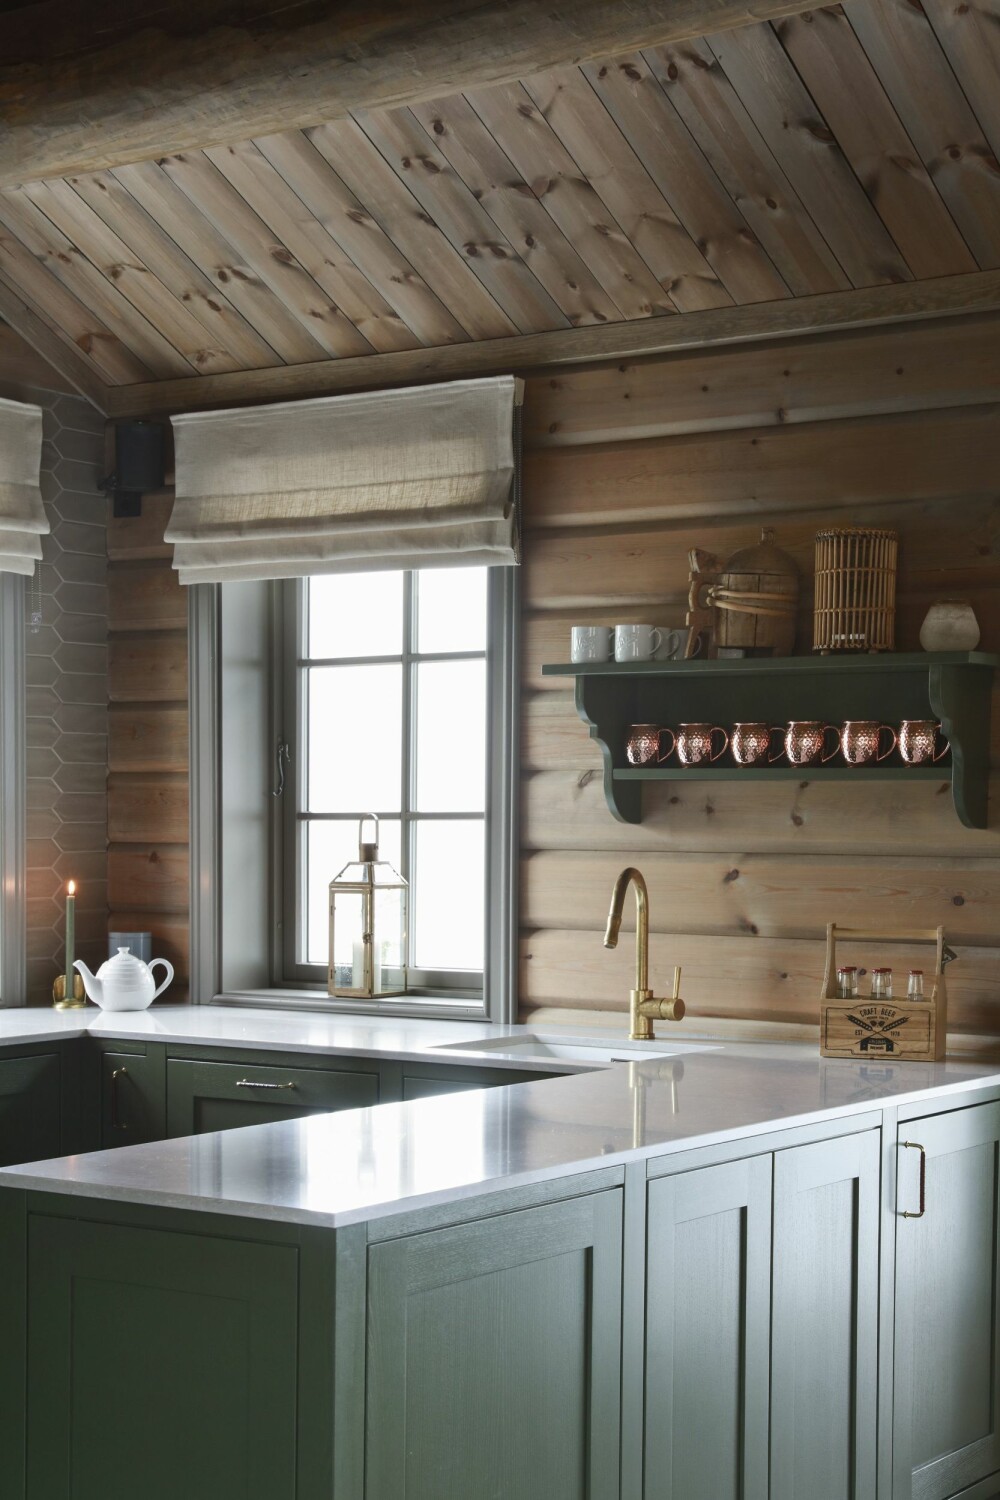 Over den praktiske kjøkkenøya henger en nostalgisk og klassisk vegghylle mot tømmerveggen. Dette skaper et klassisk og vakkert uttrykk i kombinasjon med den friske grønnfargen og kobbermuggene. 